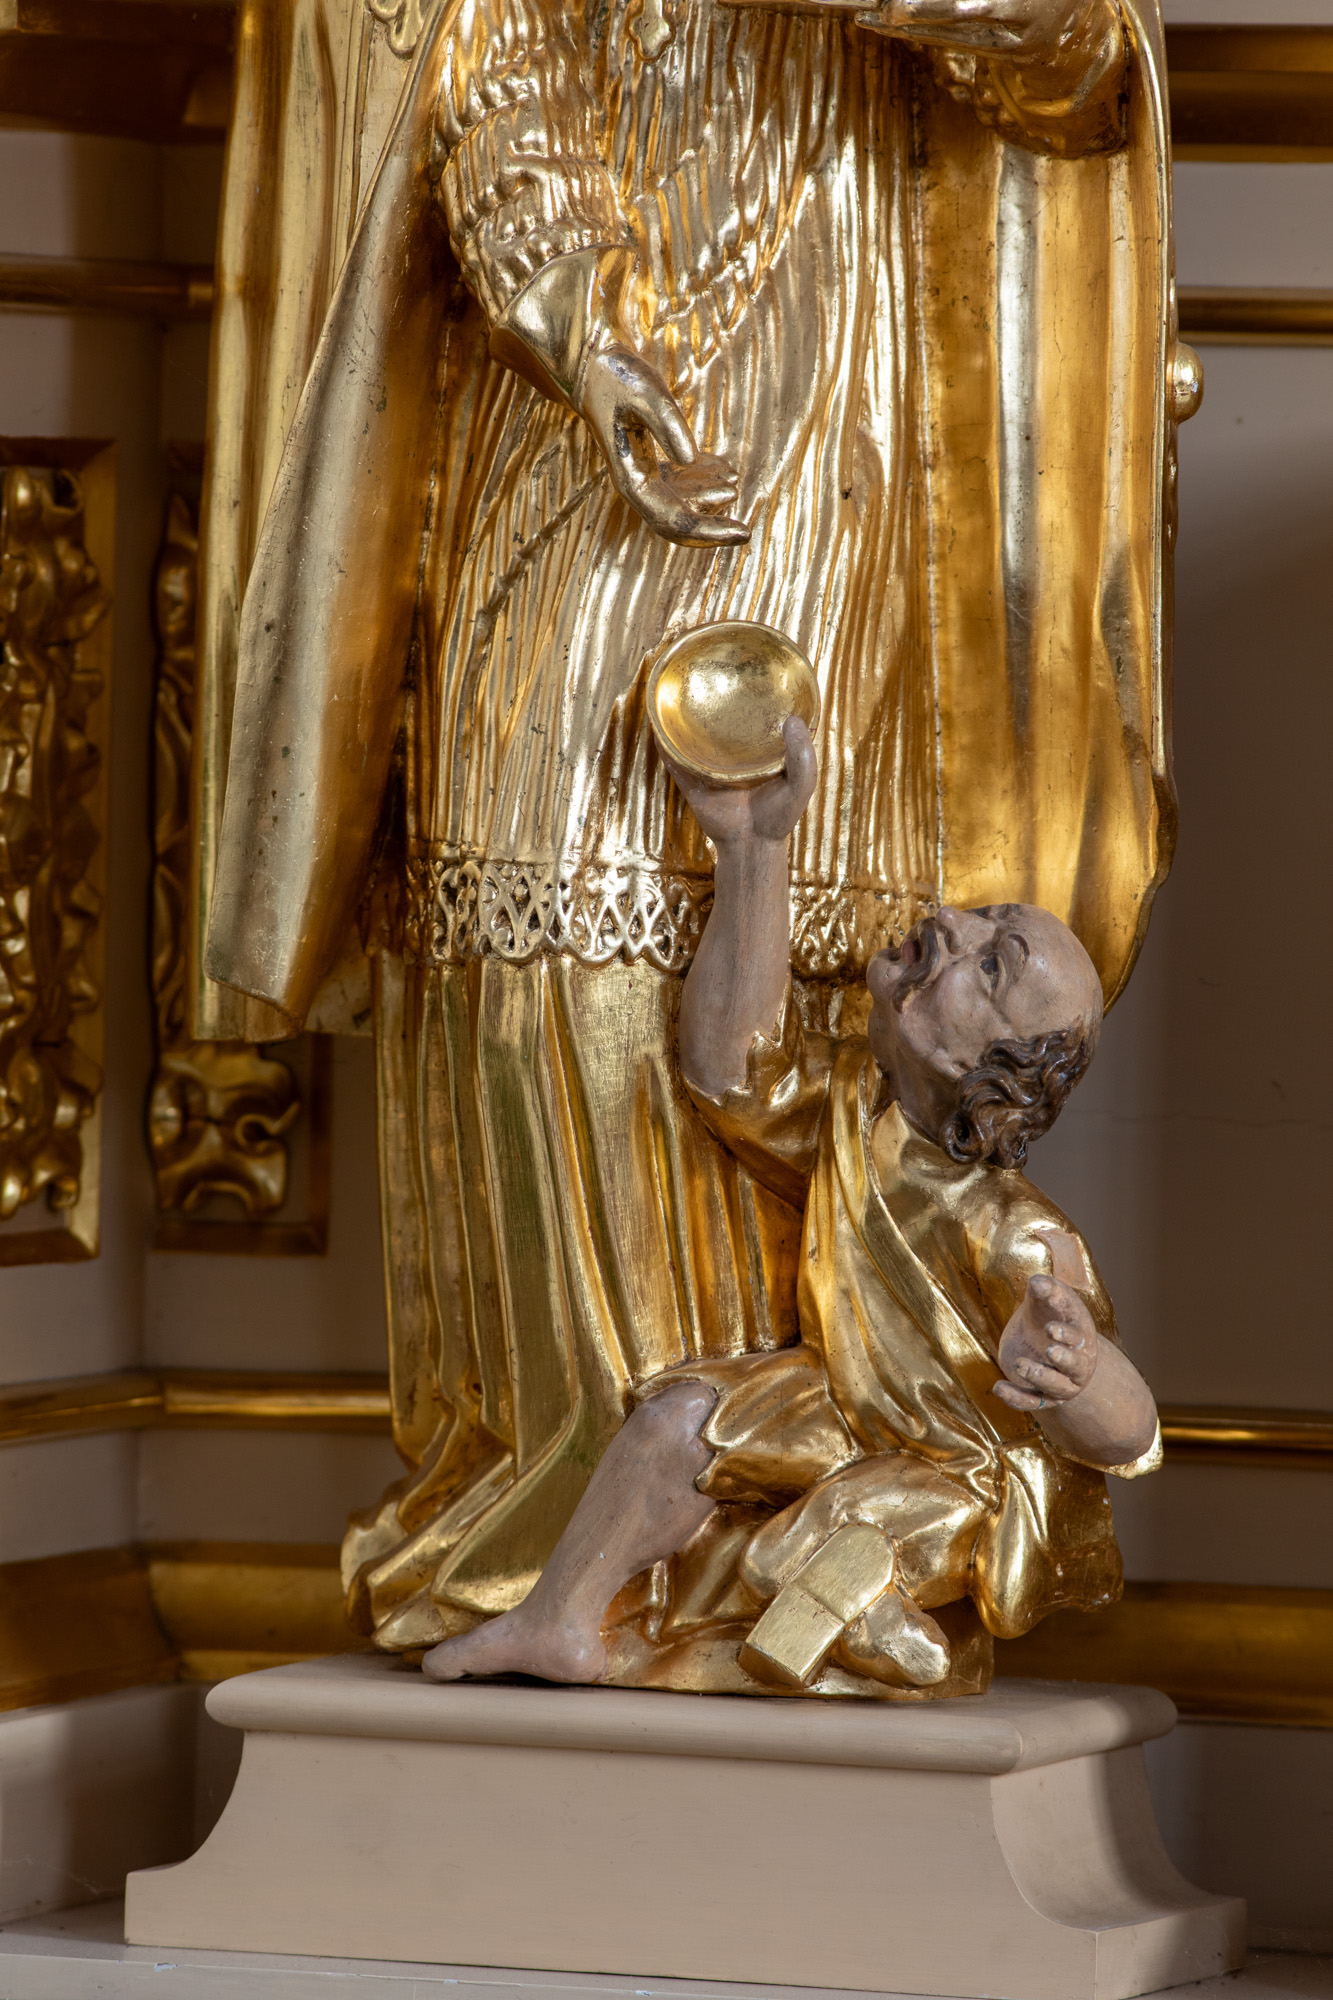 Rzeźba świętego Mikołaja